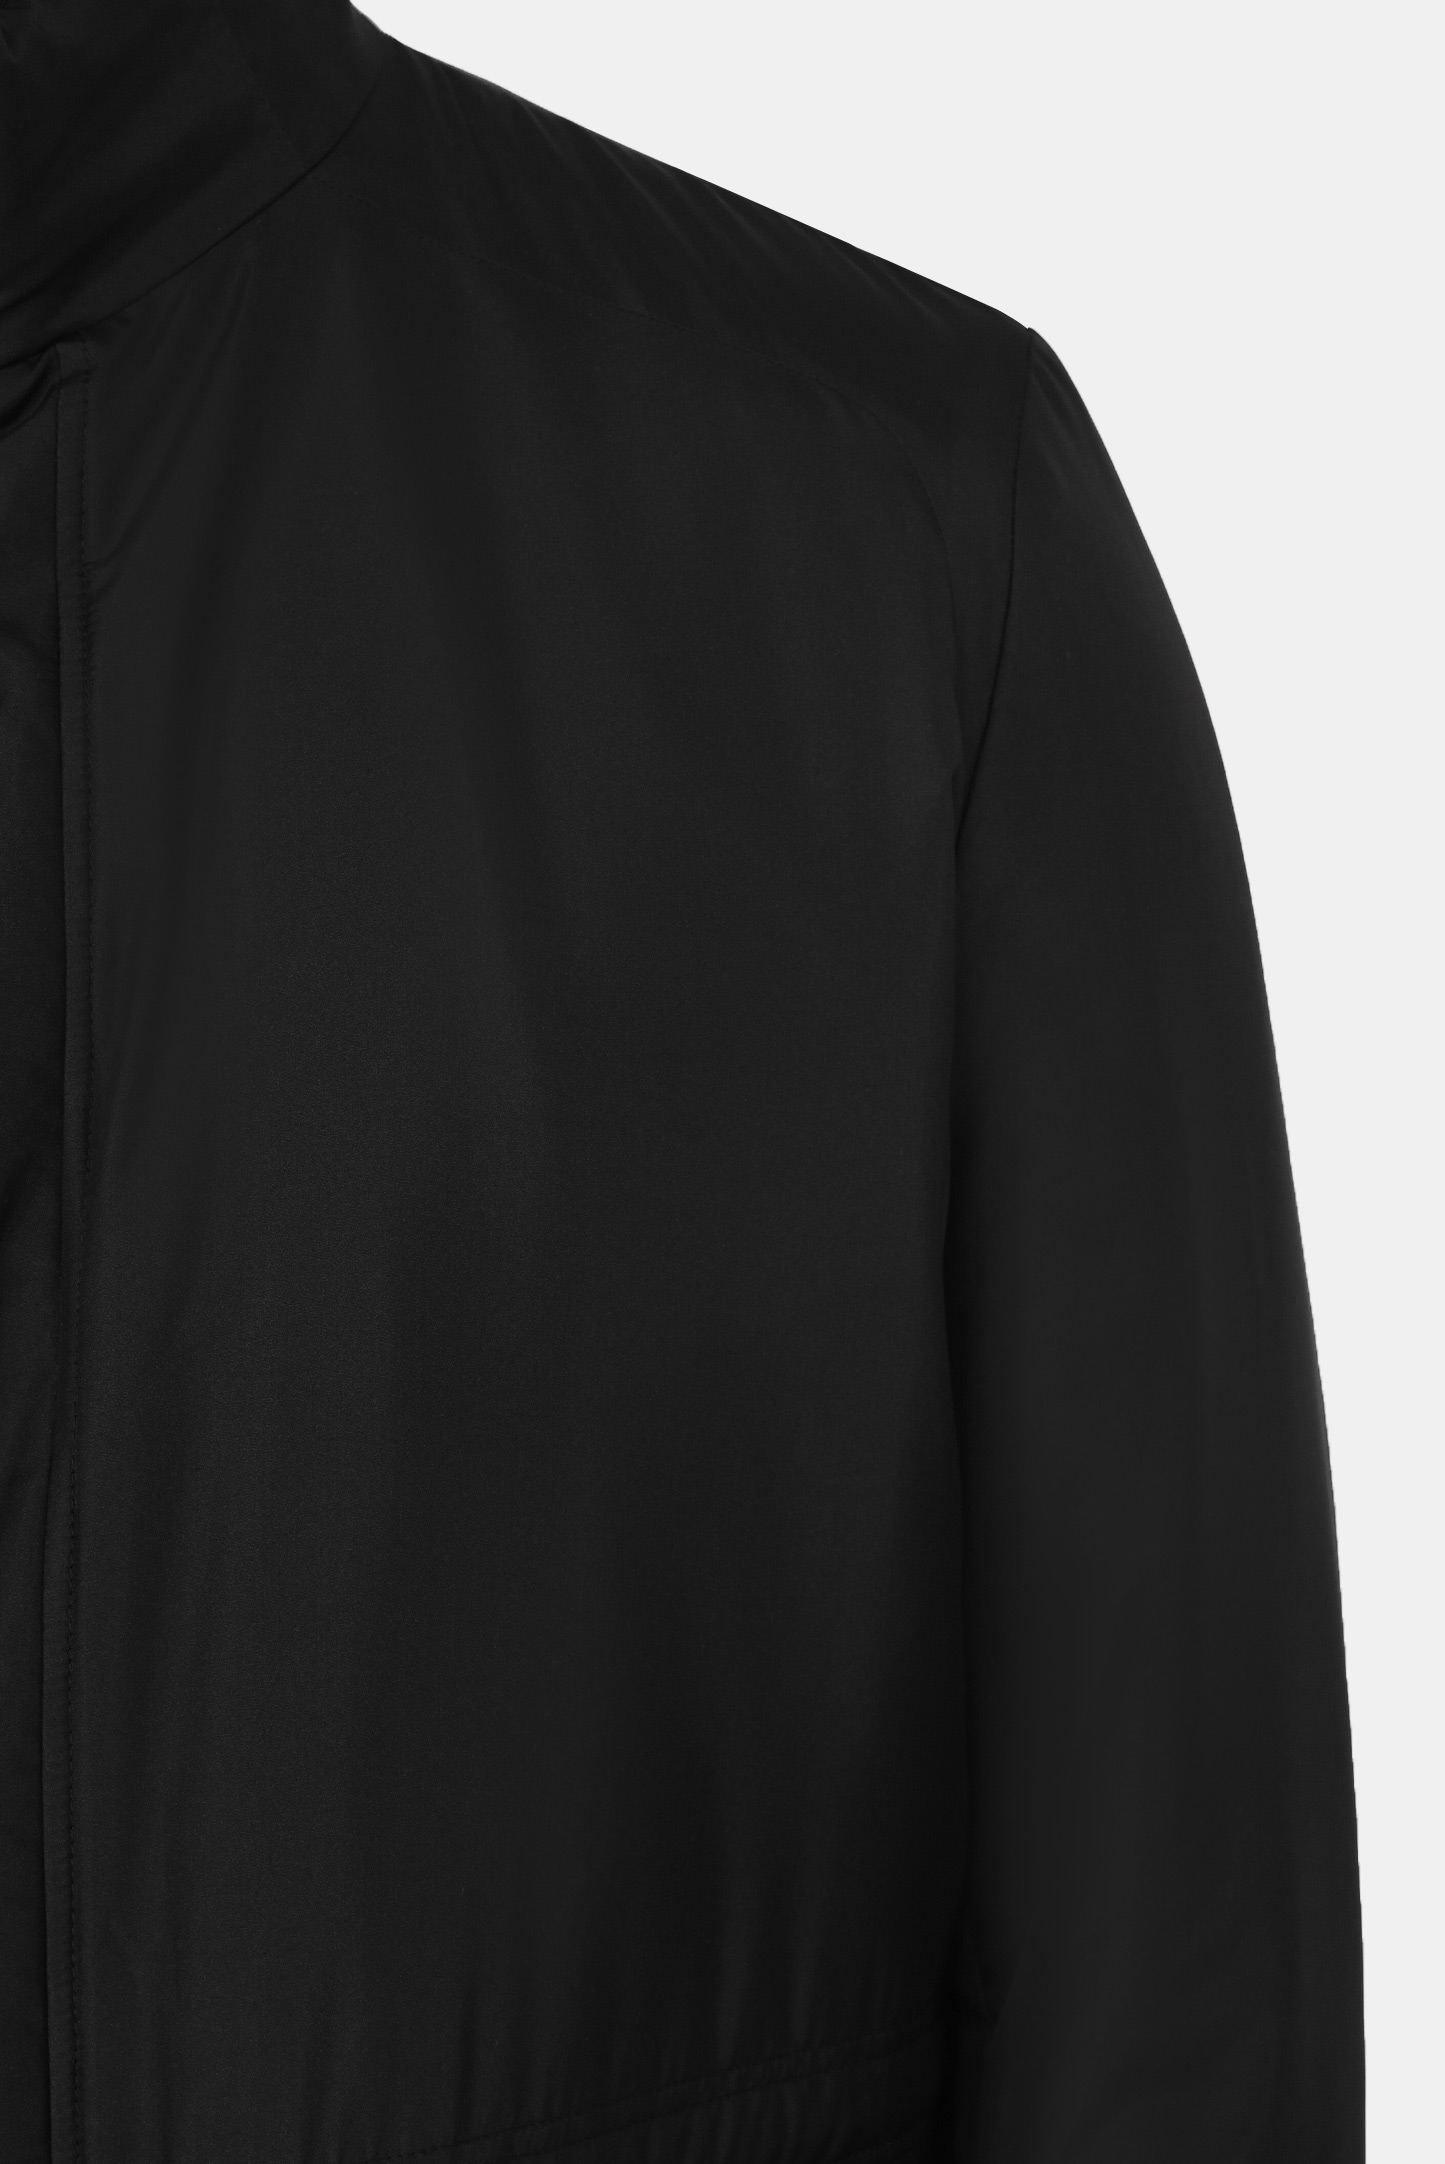 Куртка STEFANO RICCI M7J1400160 SETEC1, цвет: Черный, Мужской